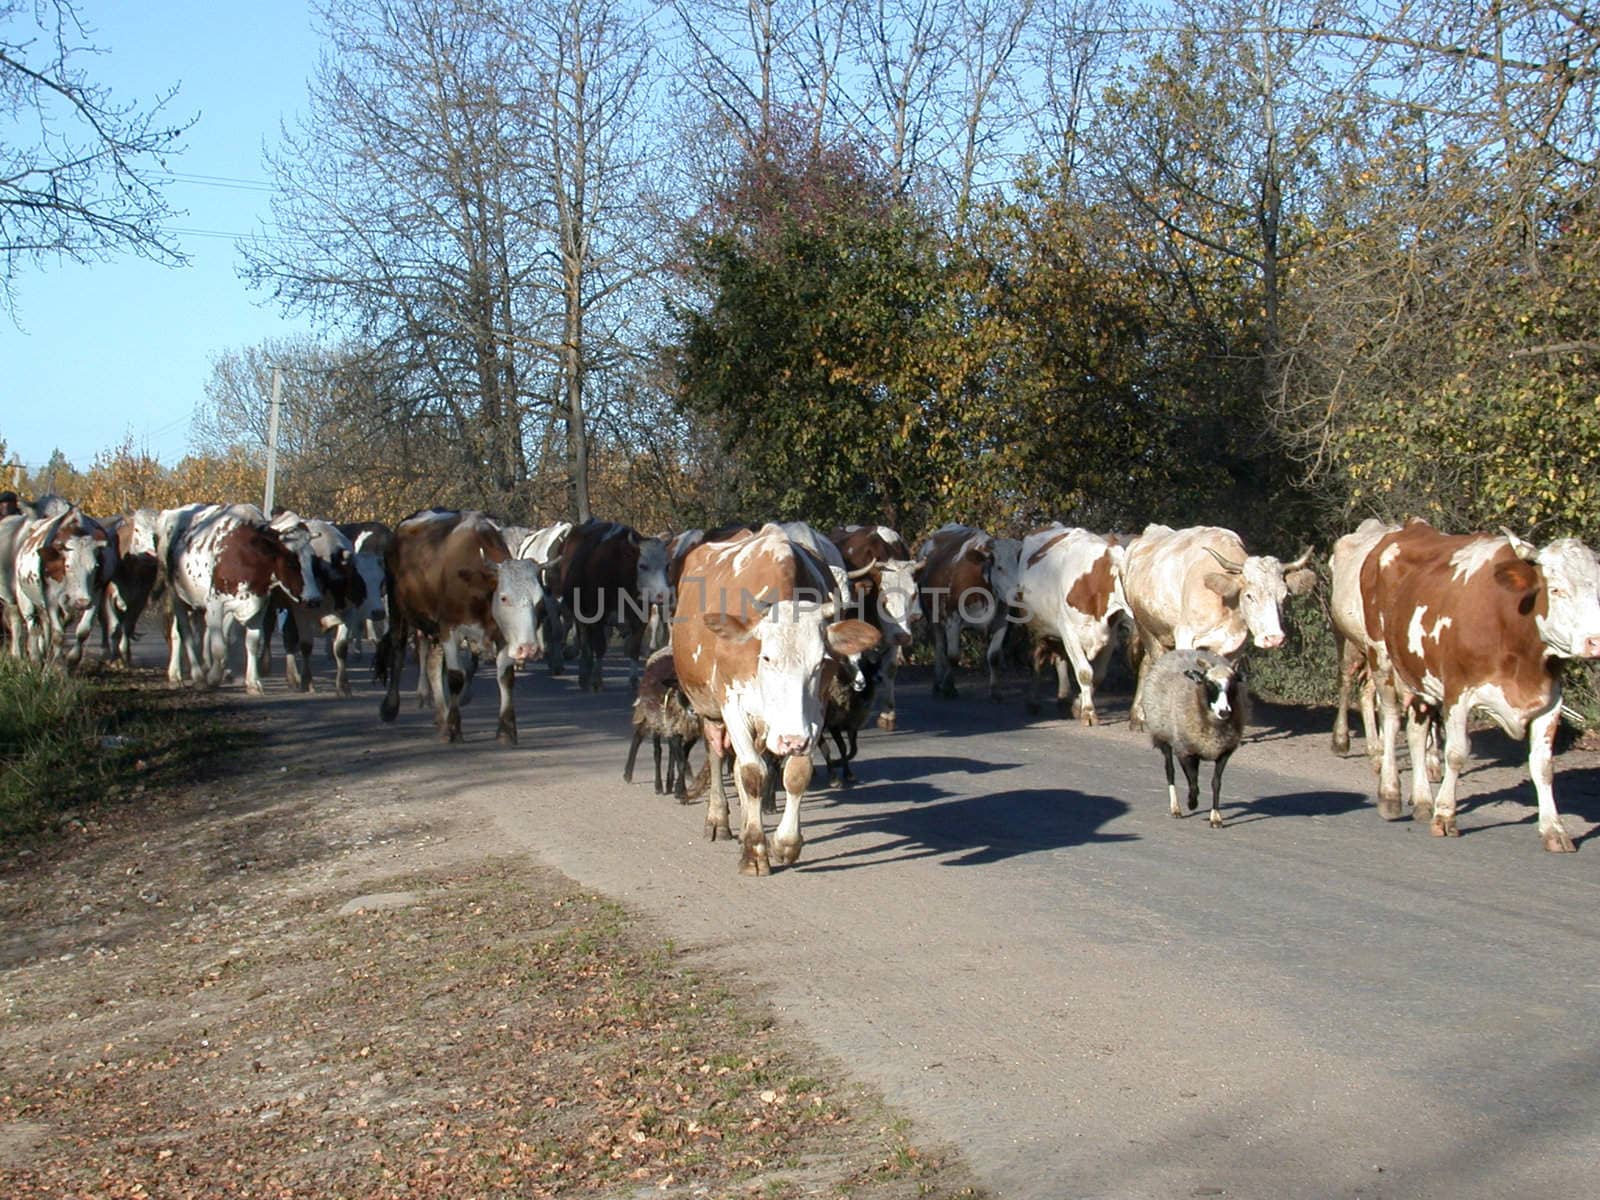 The cows go on road, farm animal